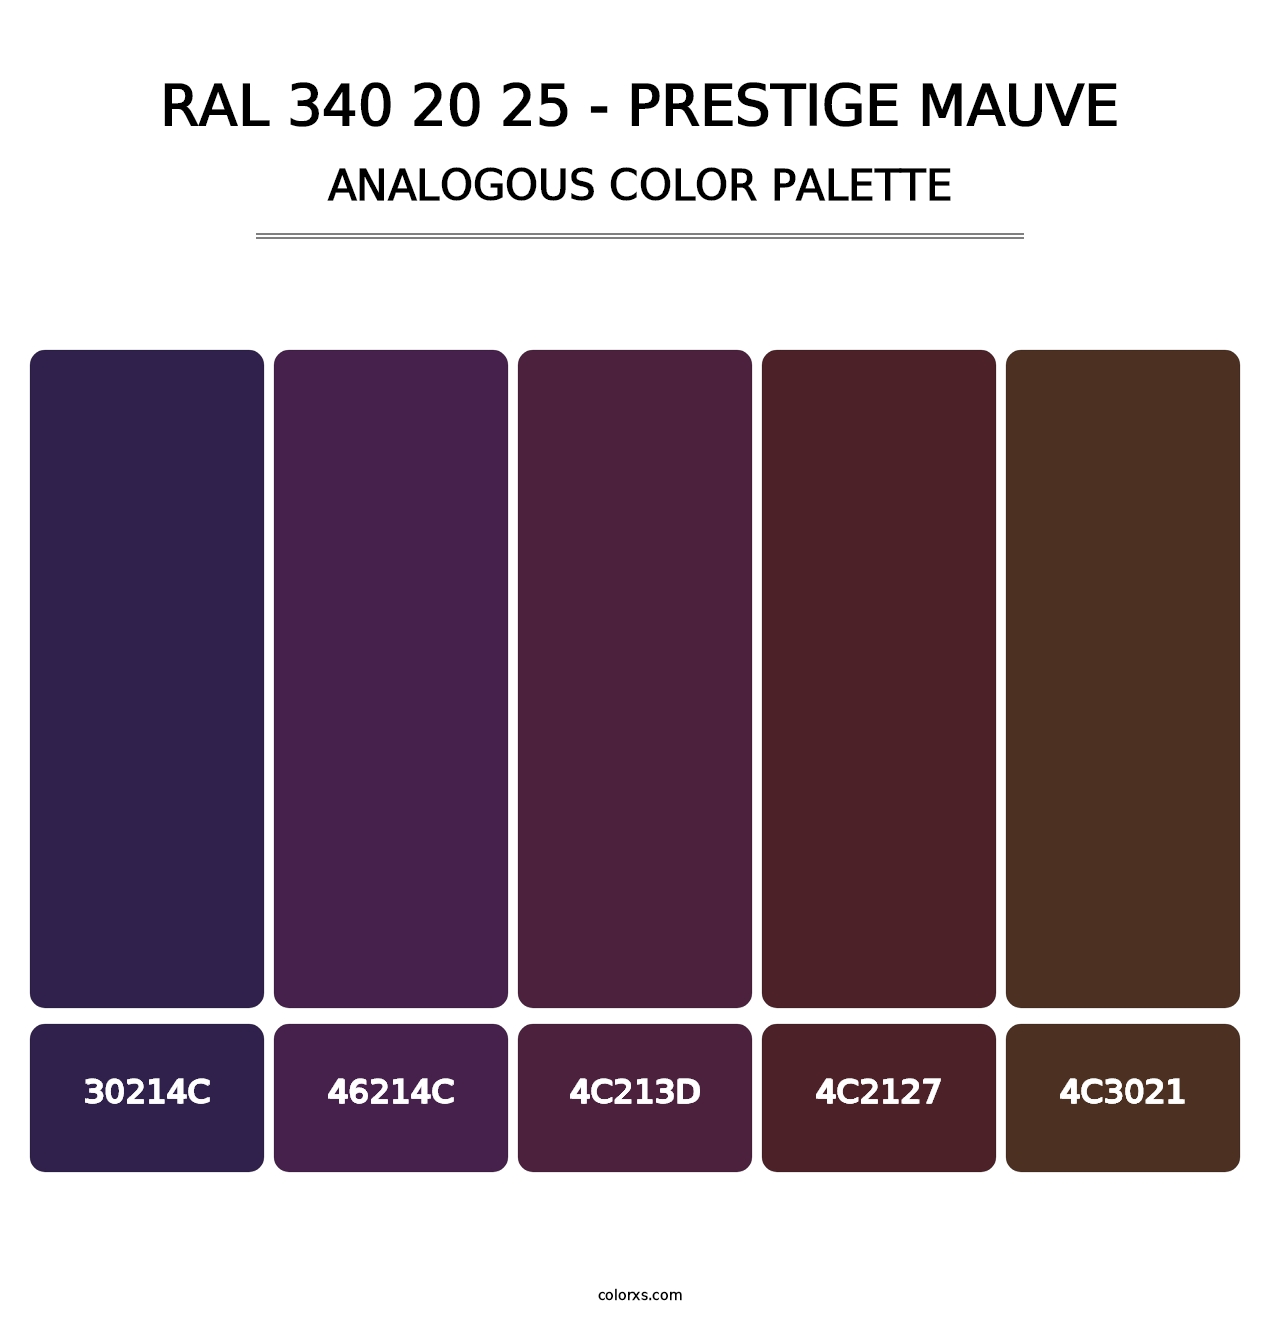 RAL 340 20 25 - Prestige Mauve - Analogous Color Palette